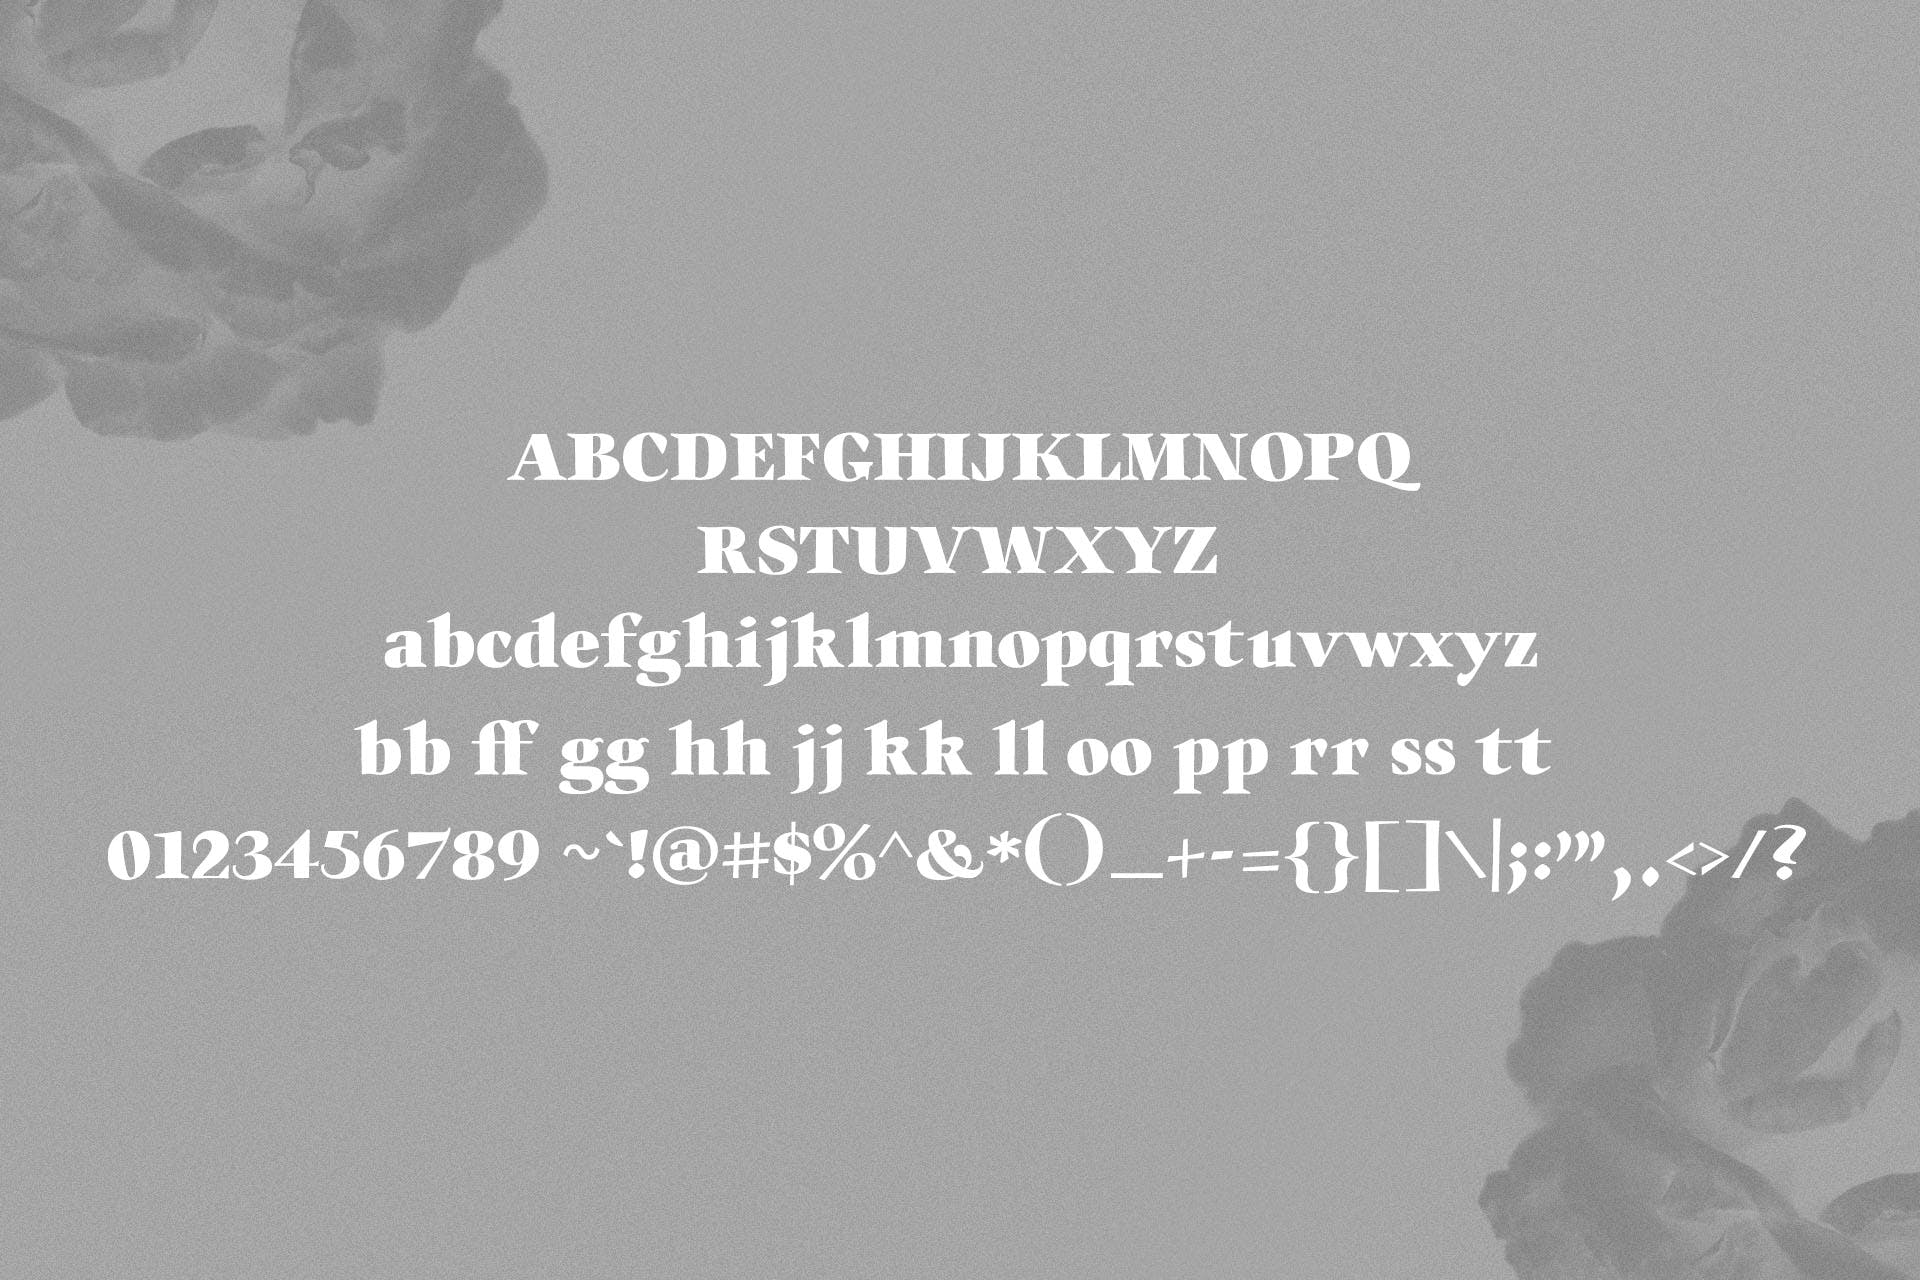 英文手写字体&印刷版式设计衬线字体二重奏组合字体 Willys Script Serif Font插图(8)